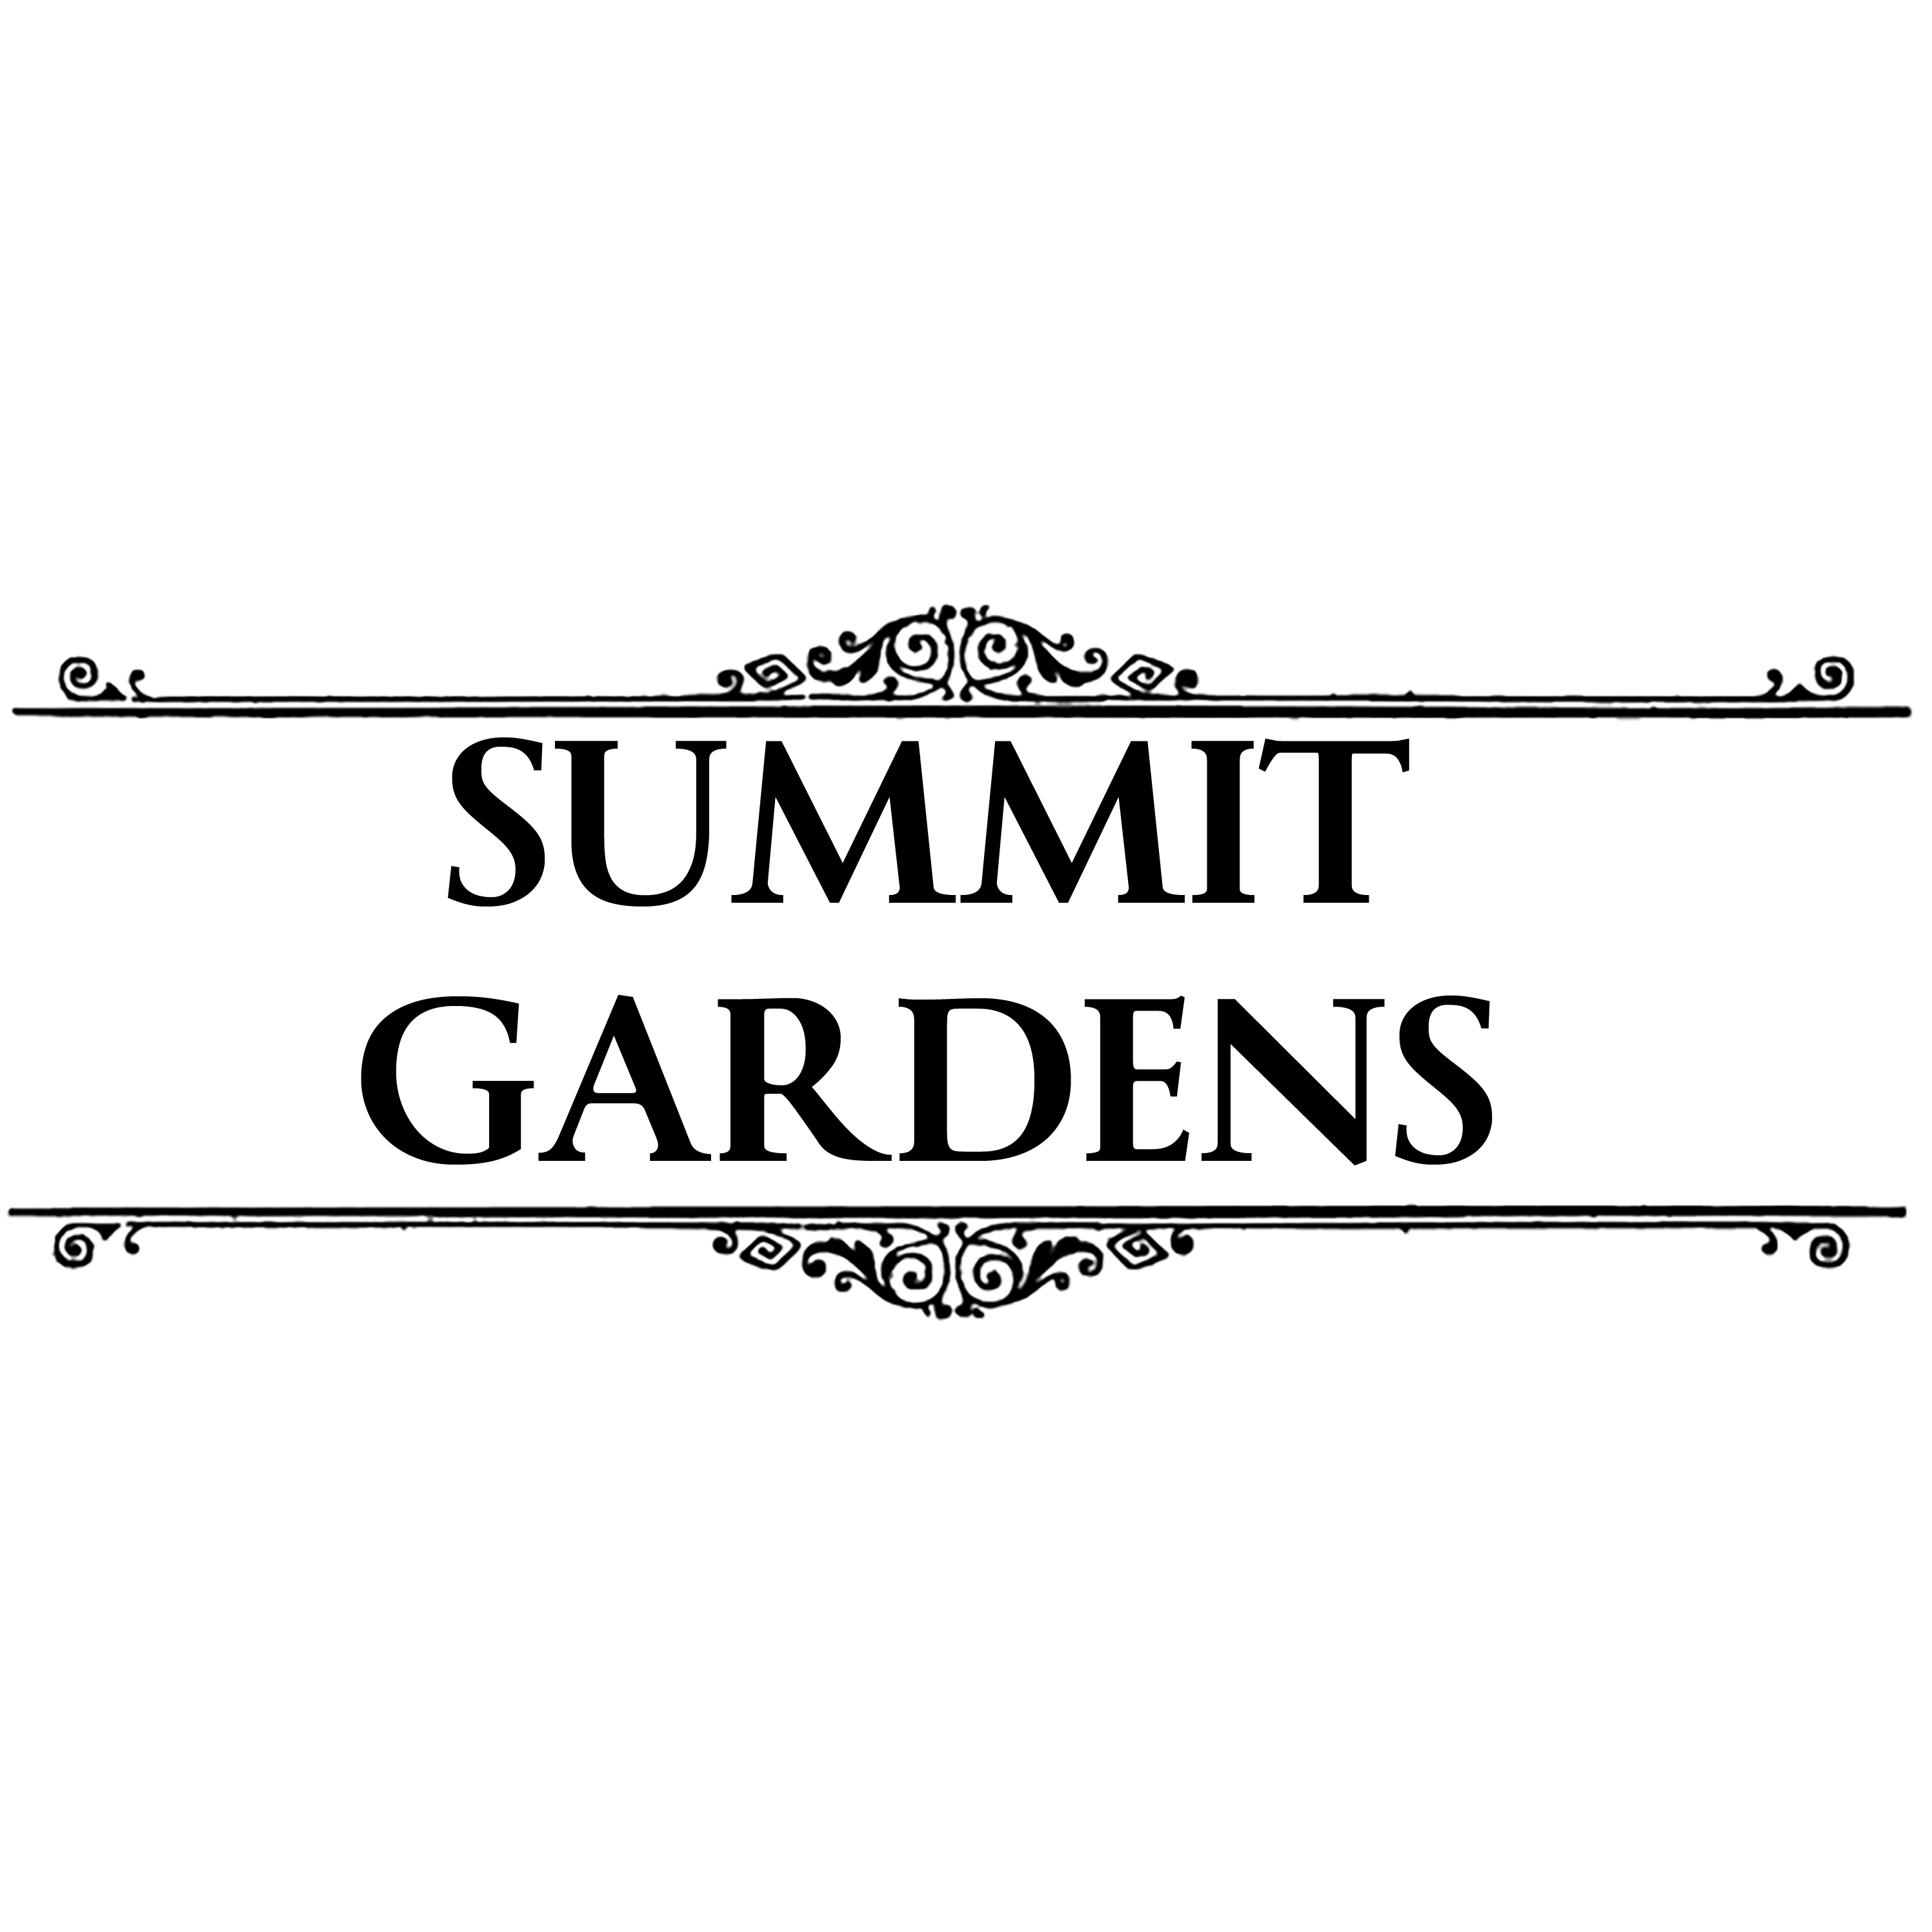 Summit Gardens logo